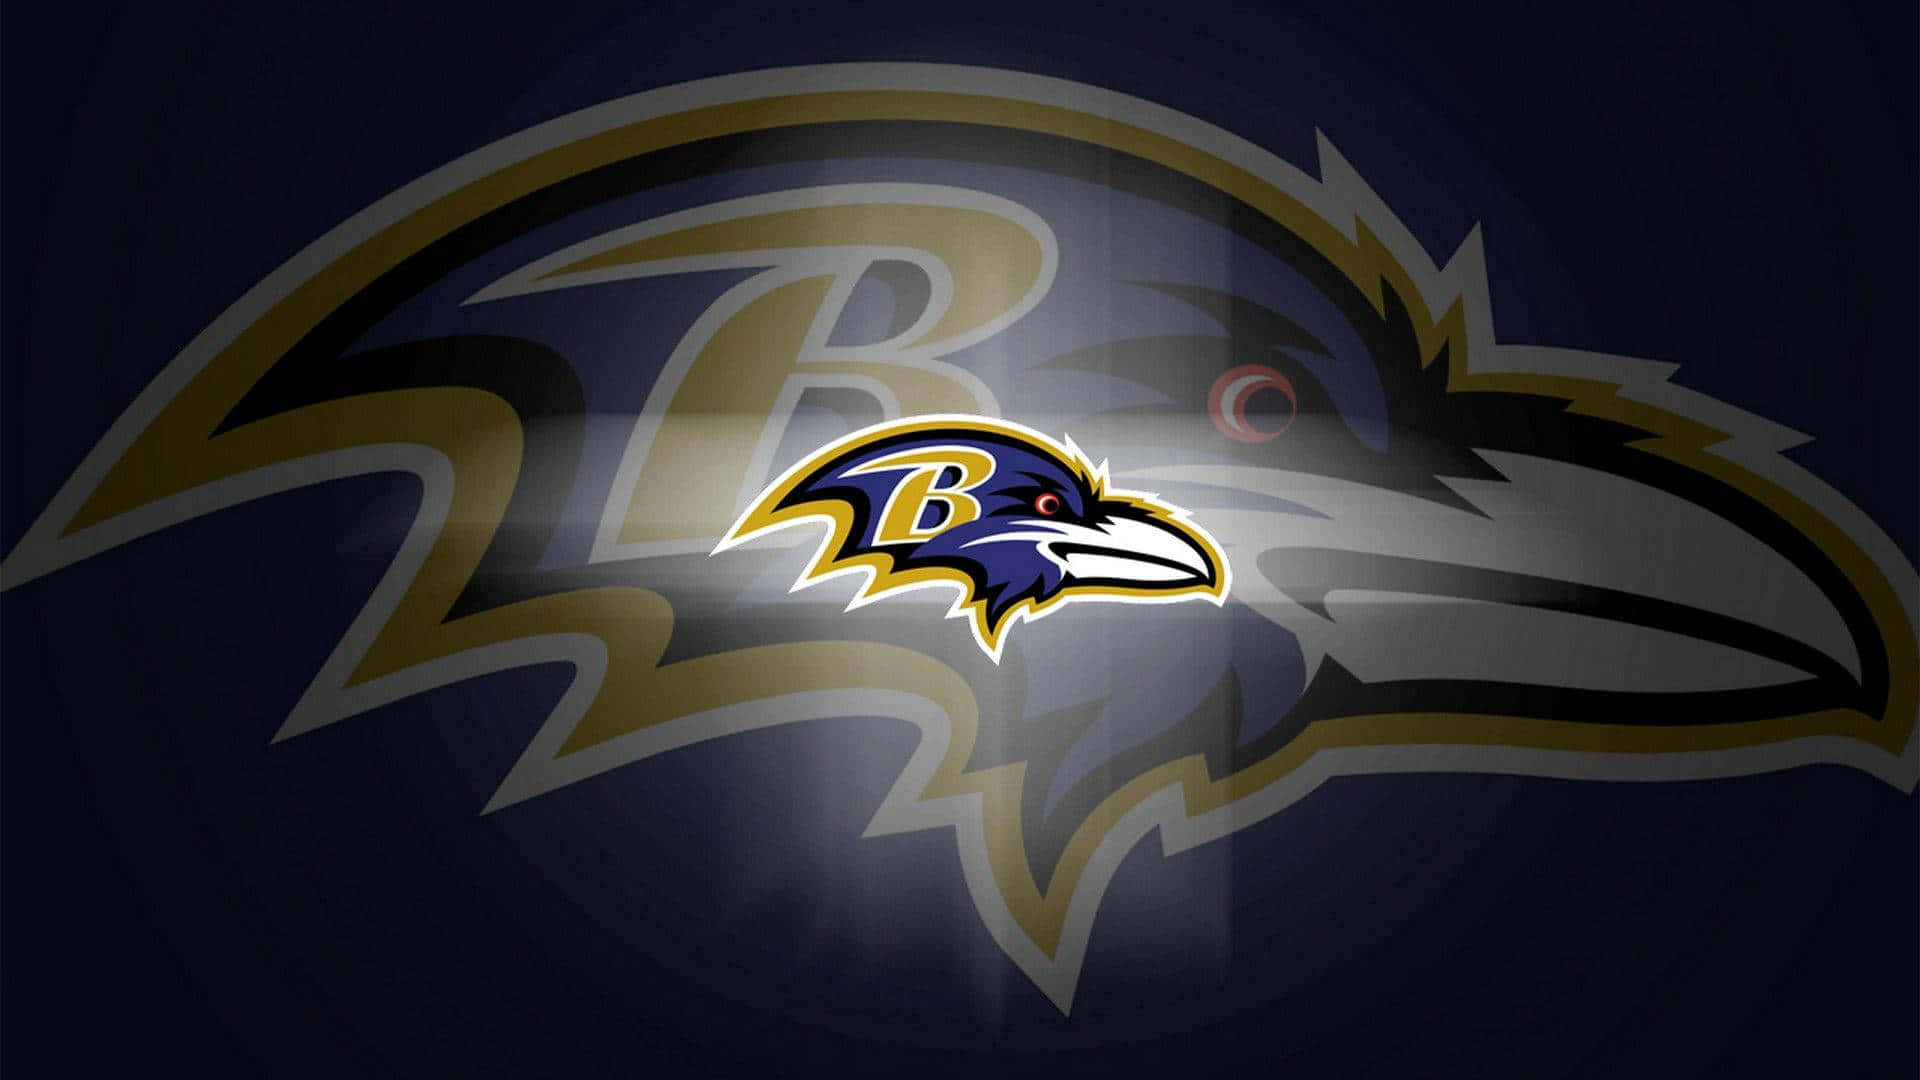 Preparatiper Il Giorno Del Gioco Con I Baltimore Ravens!